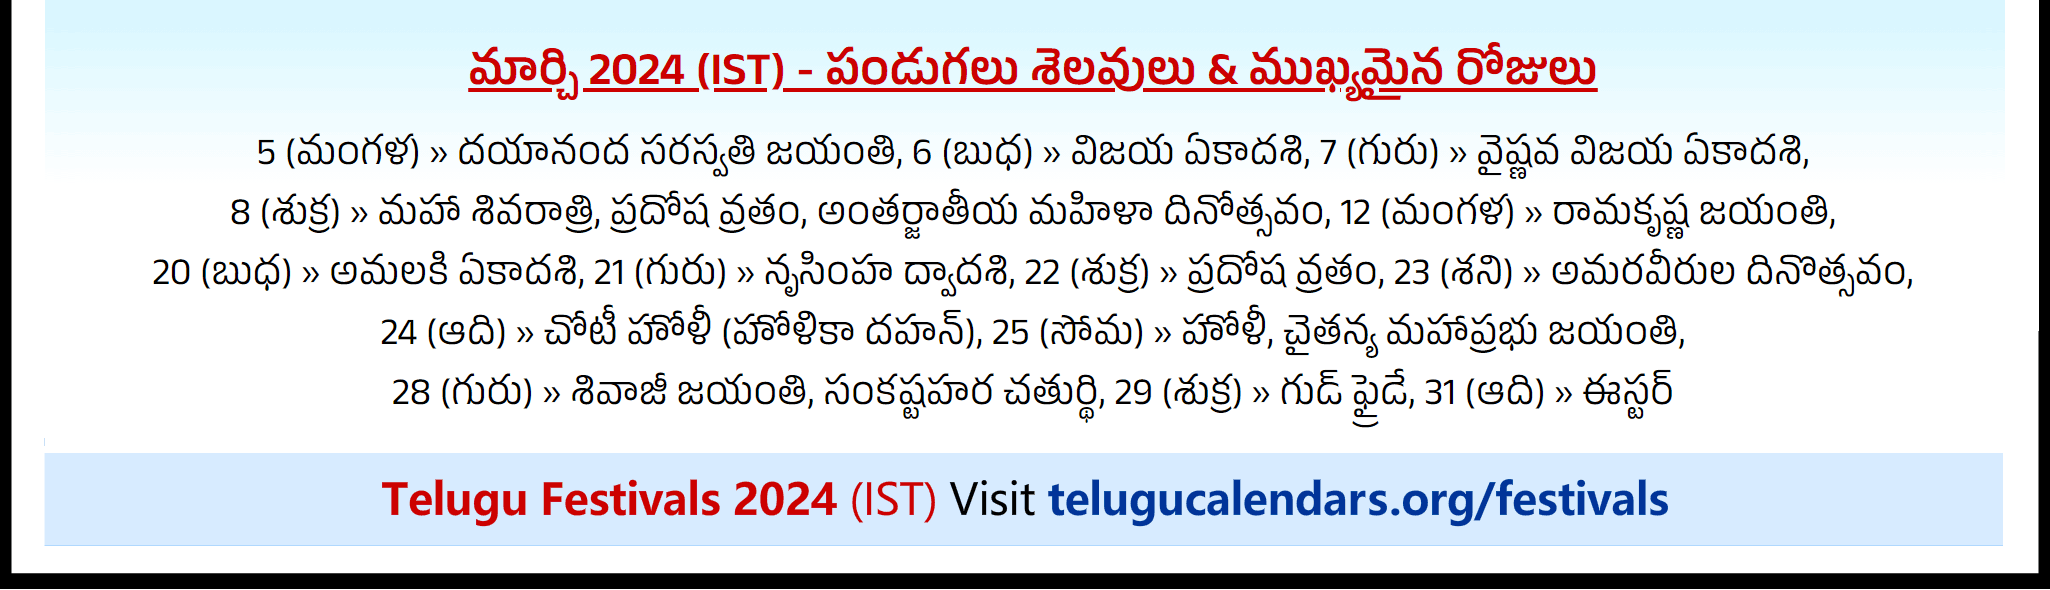 Telugu Festivals 2024 March San Francisco